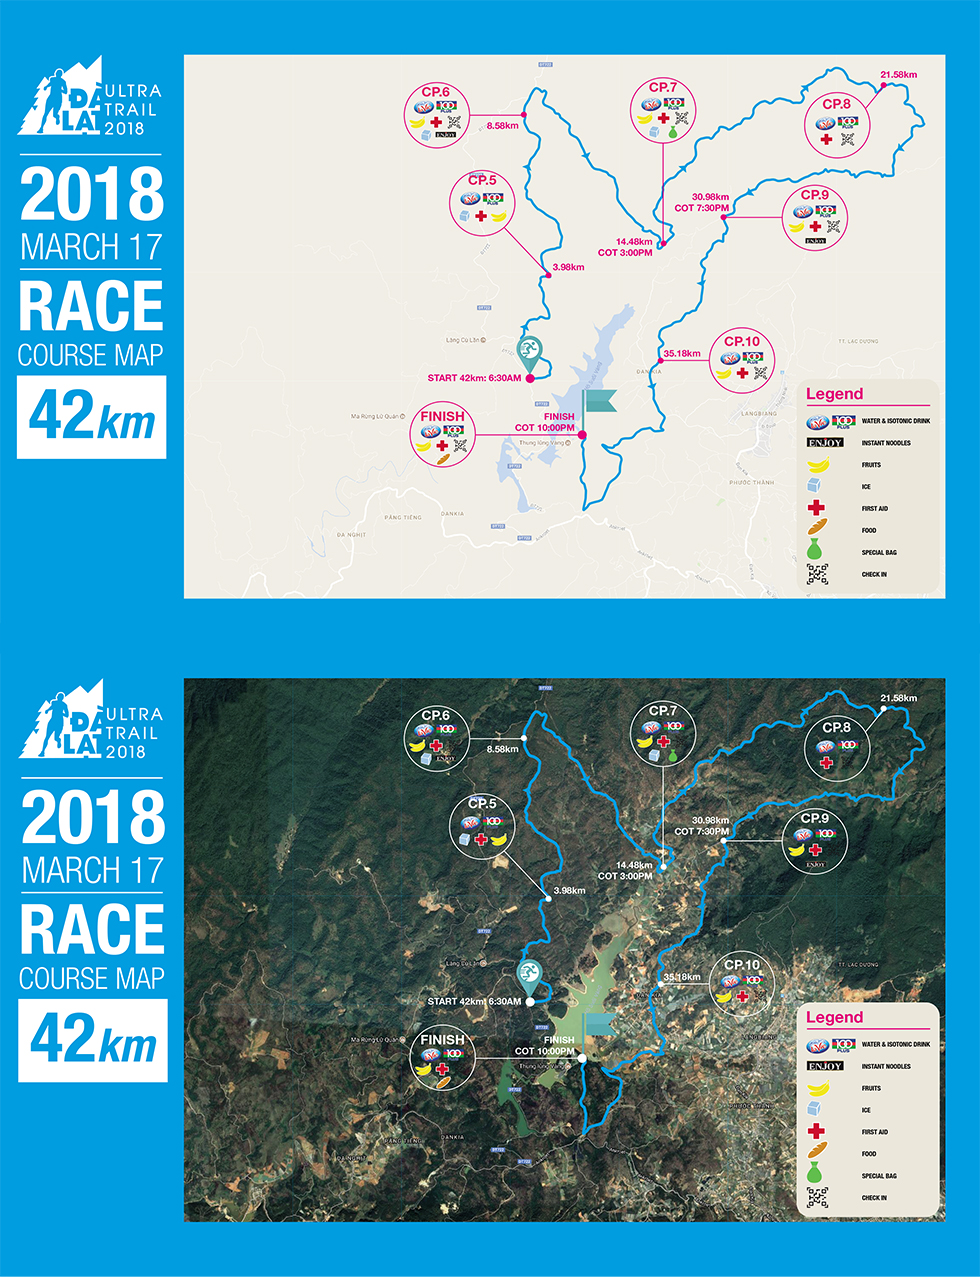 dalat-ultra-trail-2018